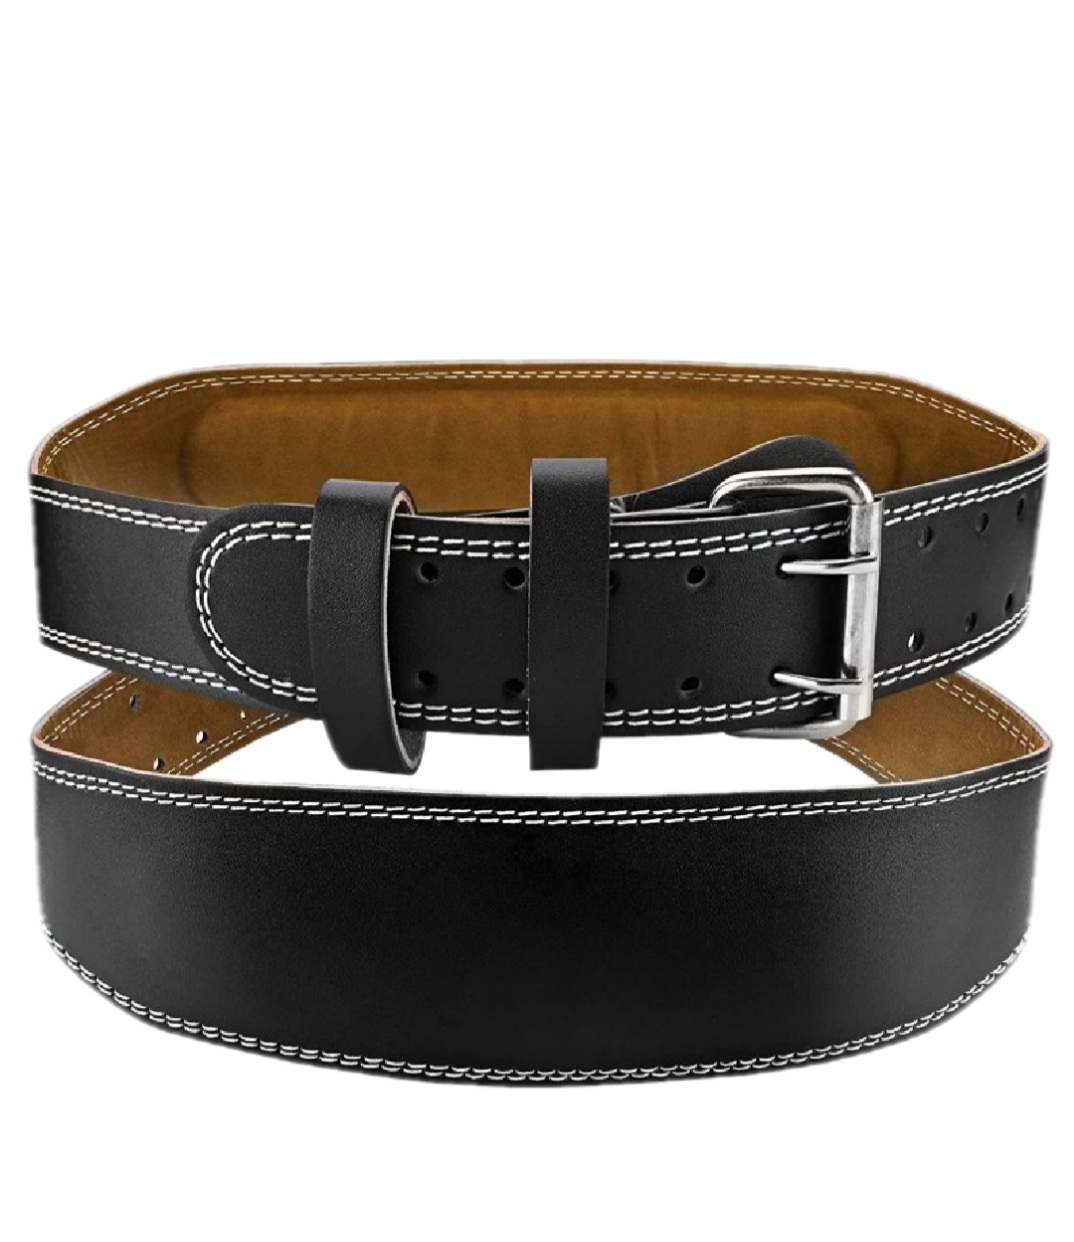 Cinturón Lumbar De Cuero Para Cintura De 85 A 110cm Ded - Negro  MKP